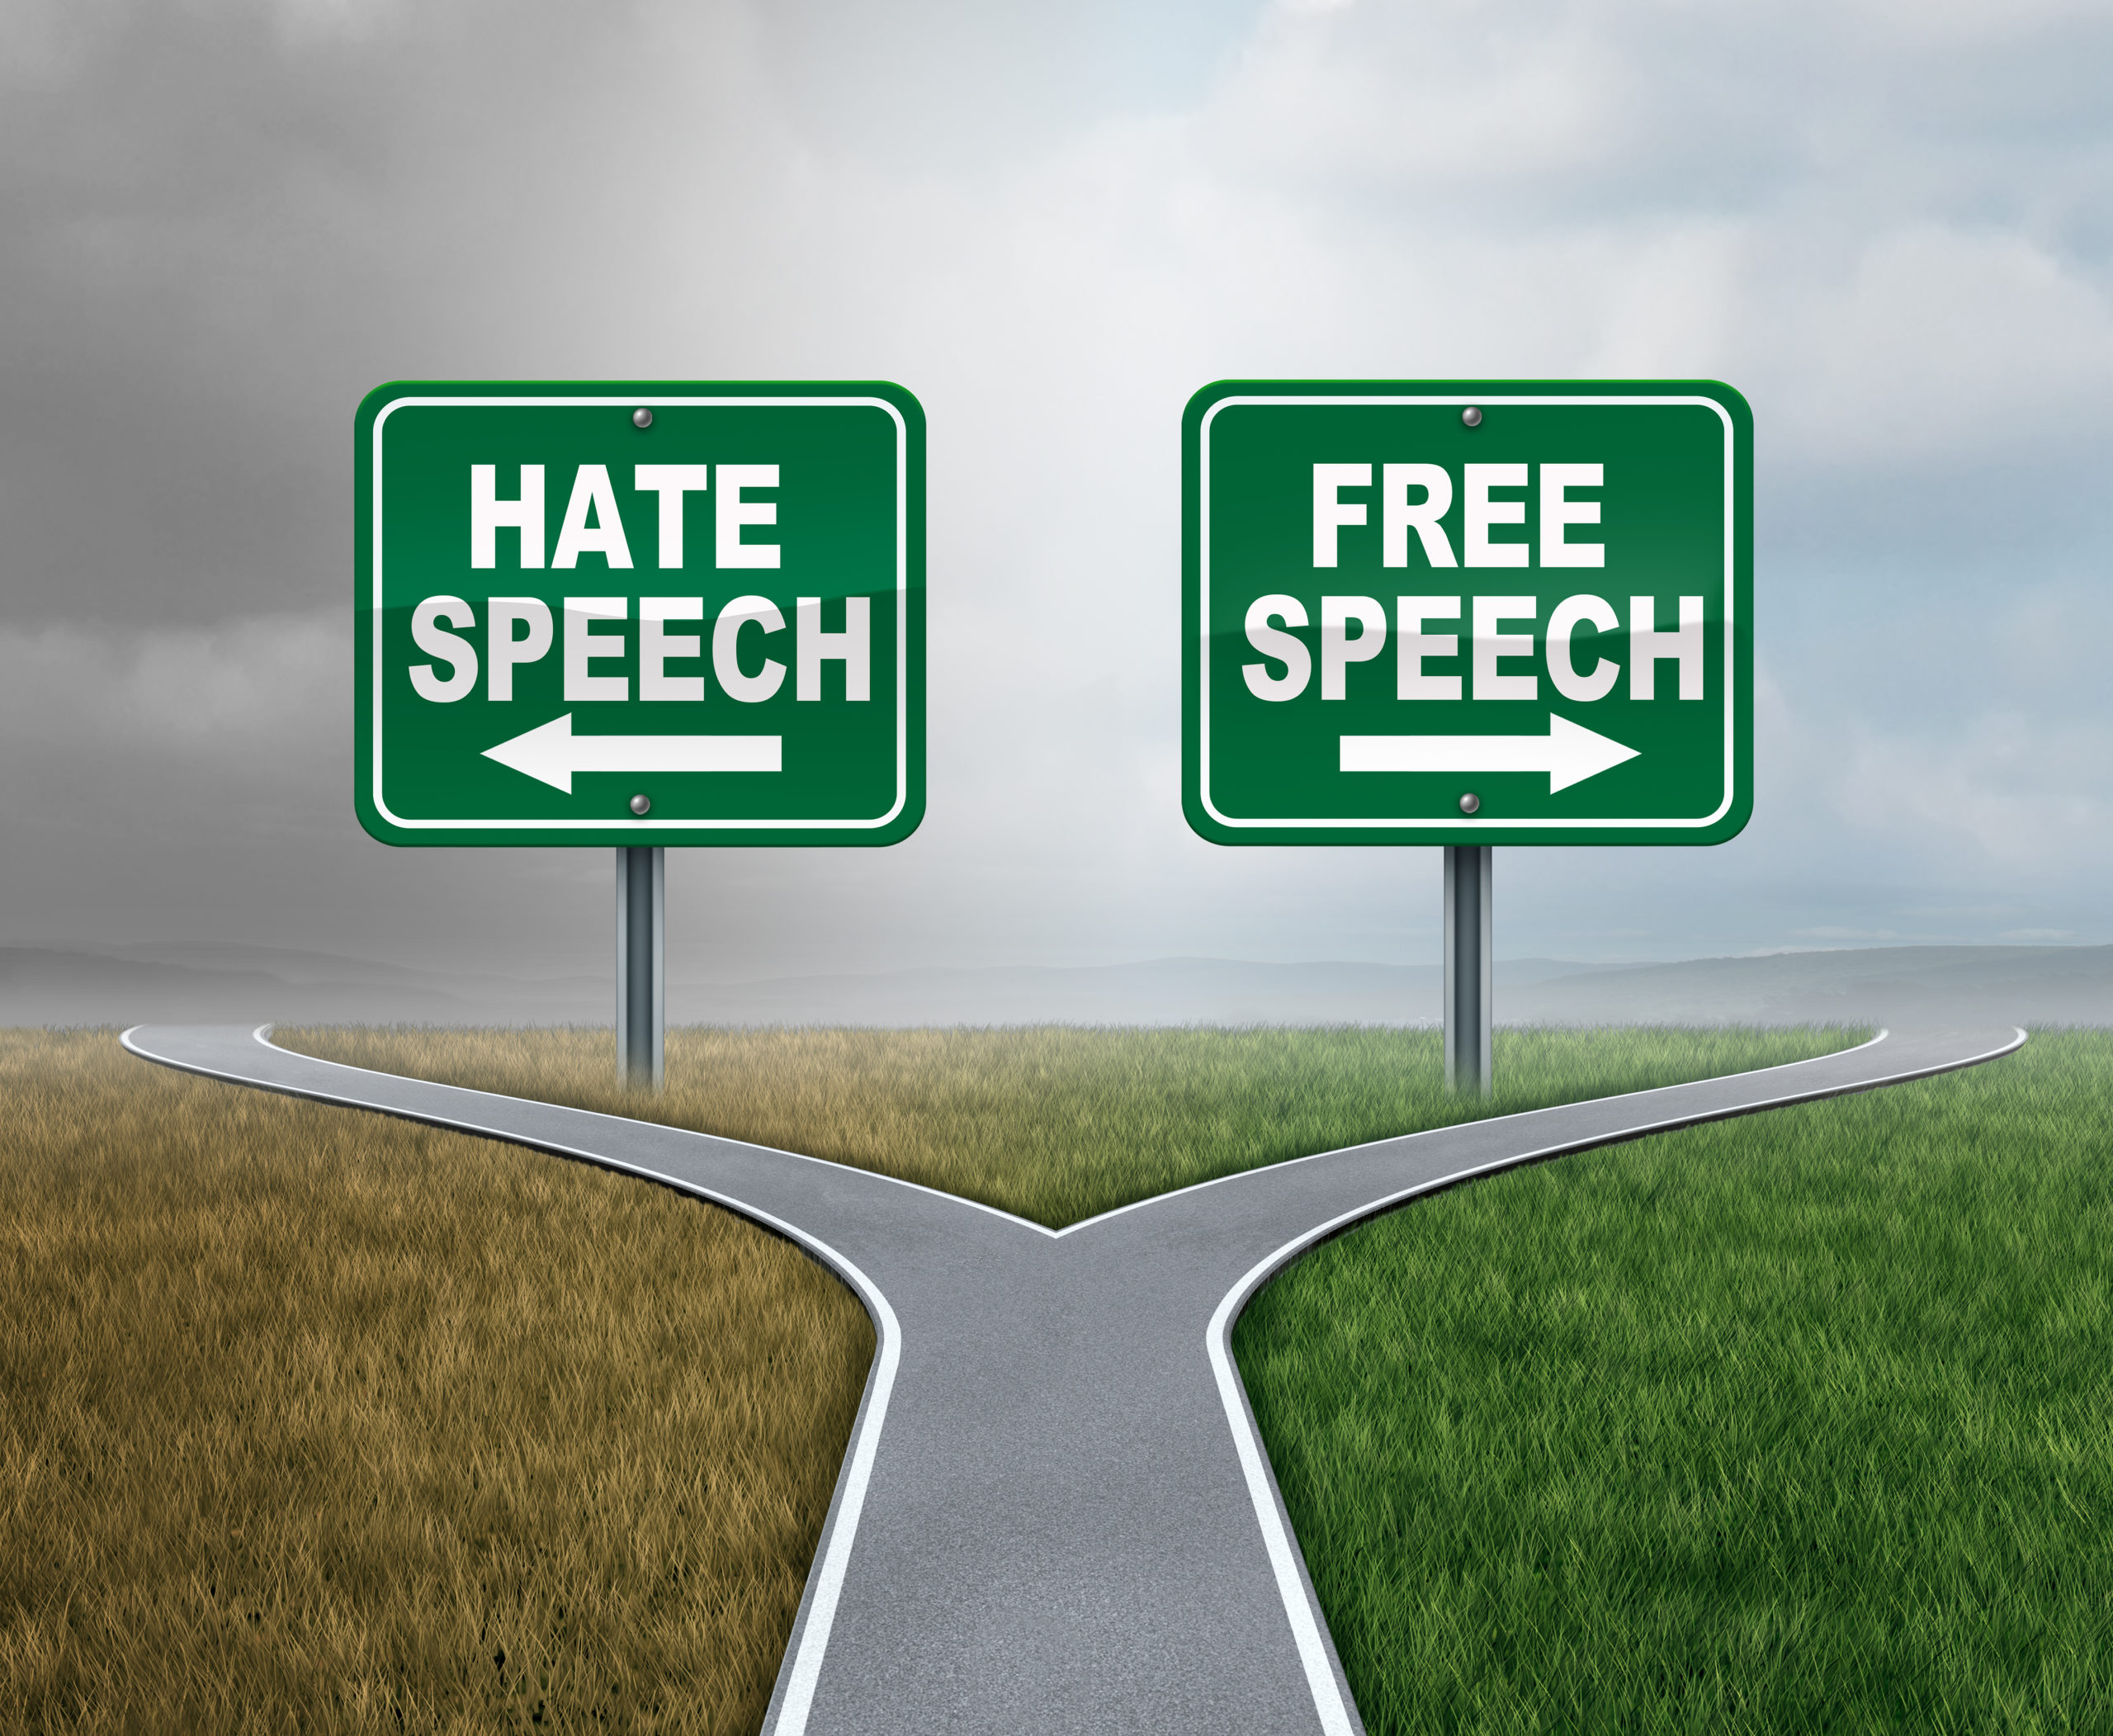 “L’UE doit trouver un équilibre entre la liberté d’expression et la responsabilité”